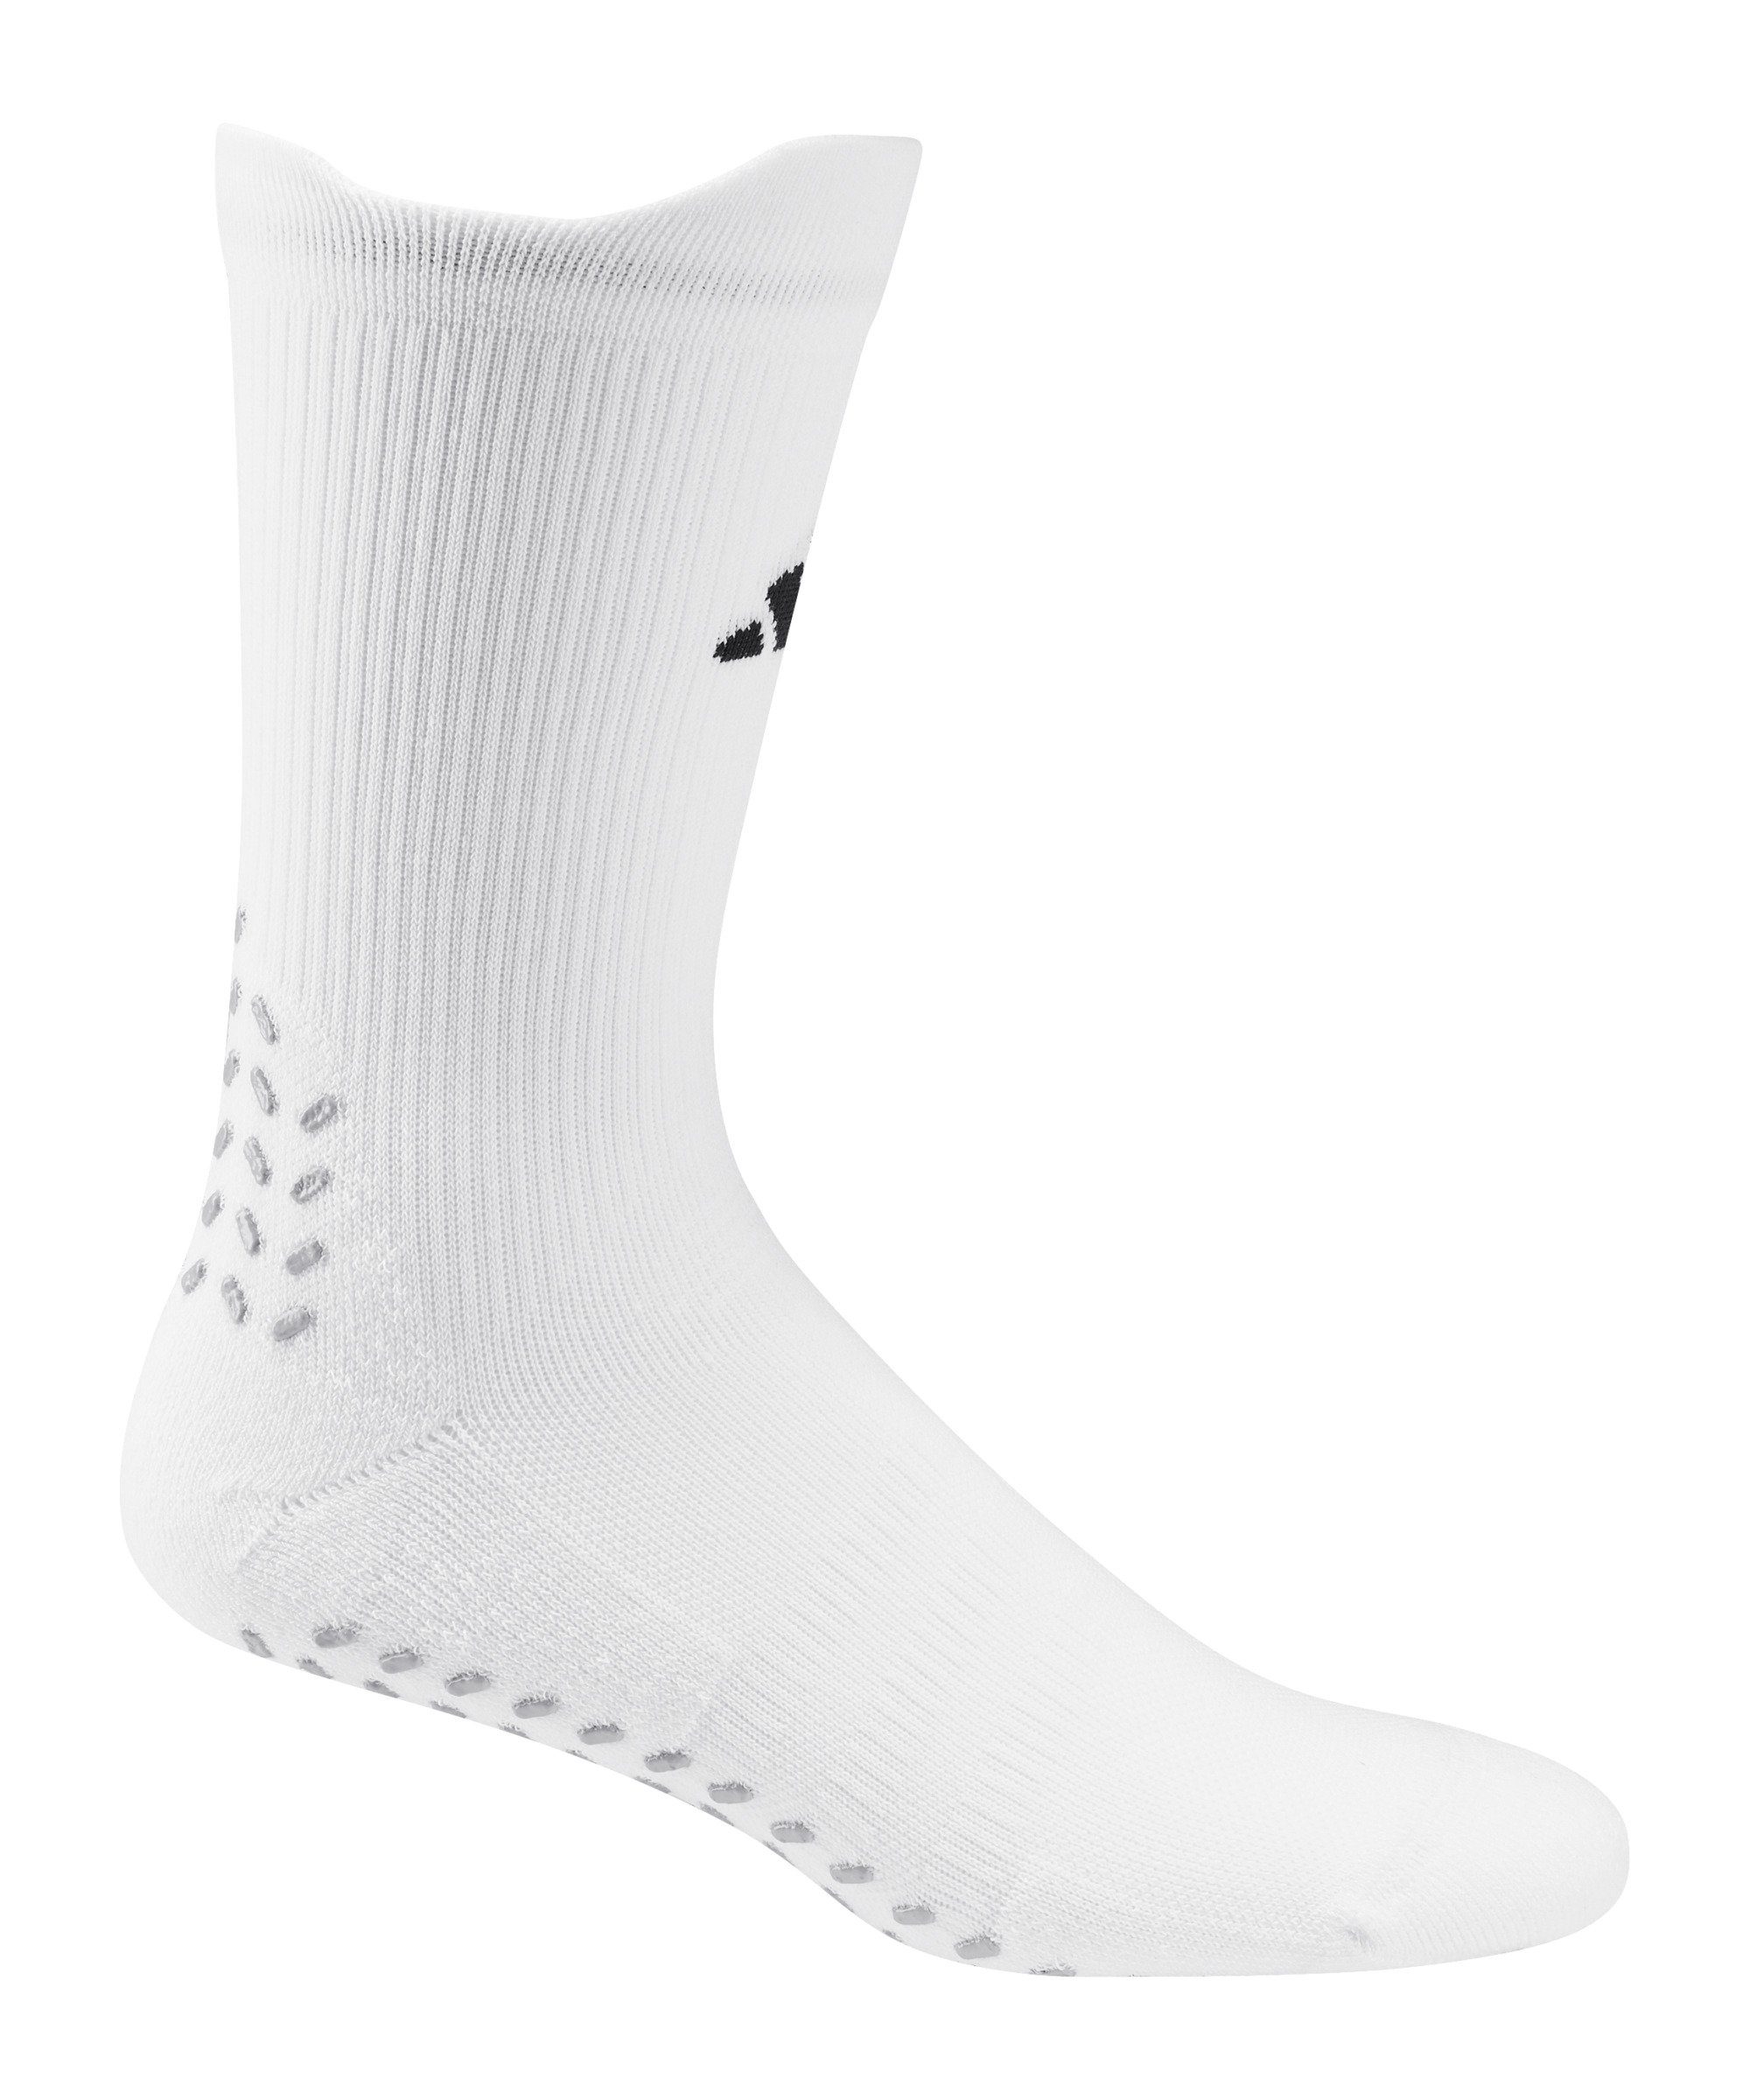 adidas Performance Sportsocken Grip Print Socken weissschwarz default